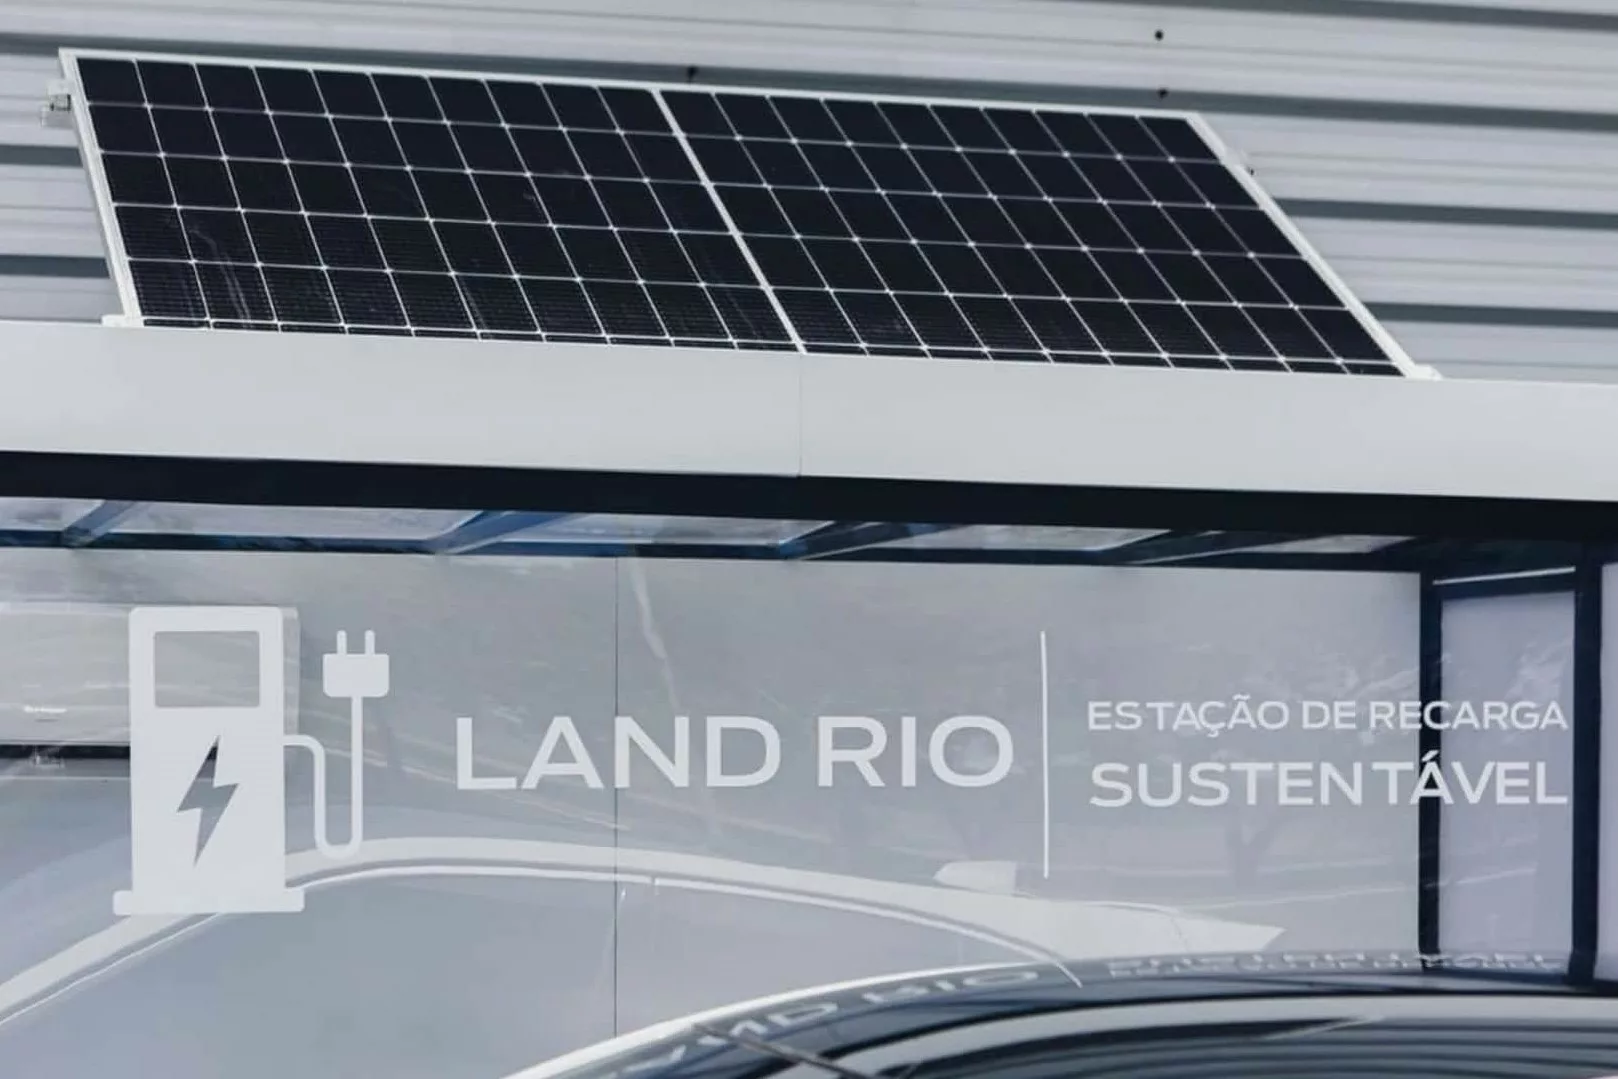 Ponto de recarga sustentável da JLR no Rio de Janeiro 